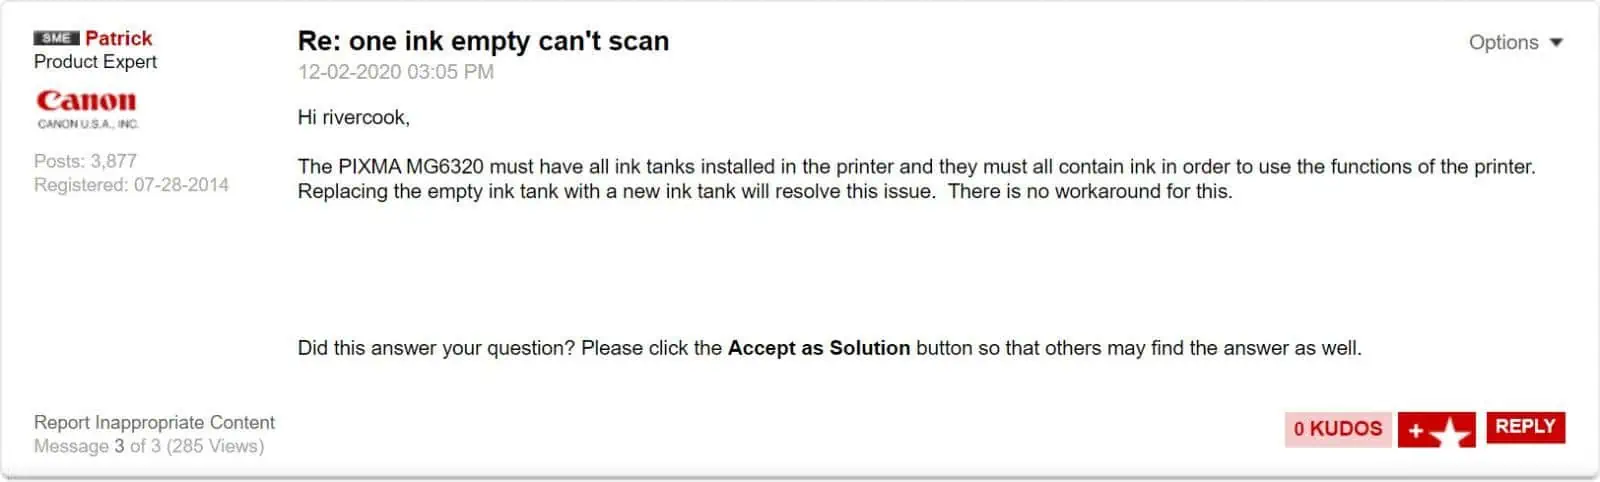 Canon ha fatto causa per interrompere la scansione e l’invio di fax quando le sue stampanti hanno esaurito l’inchiostro